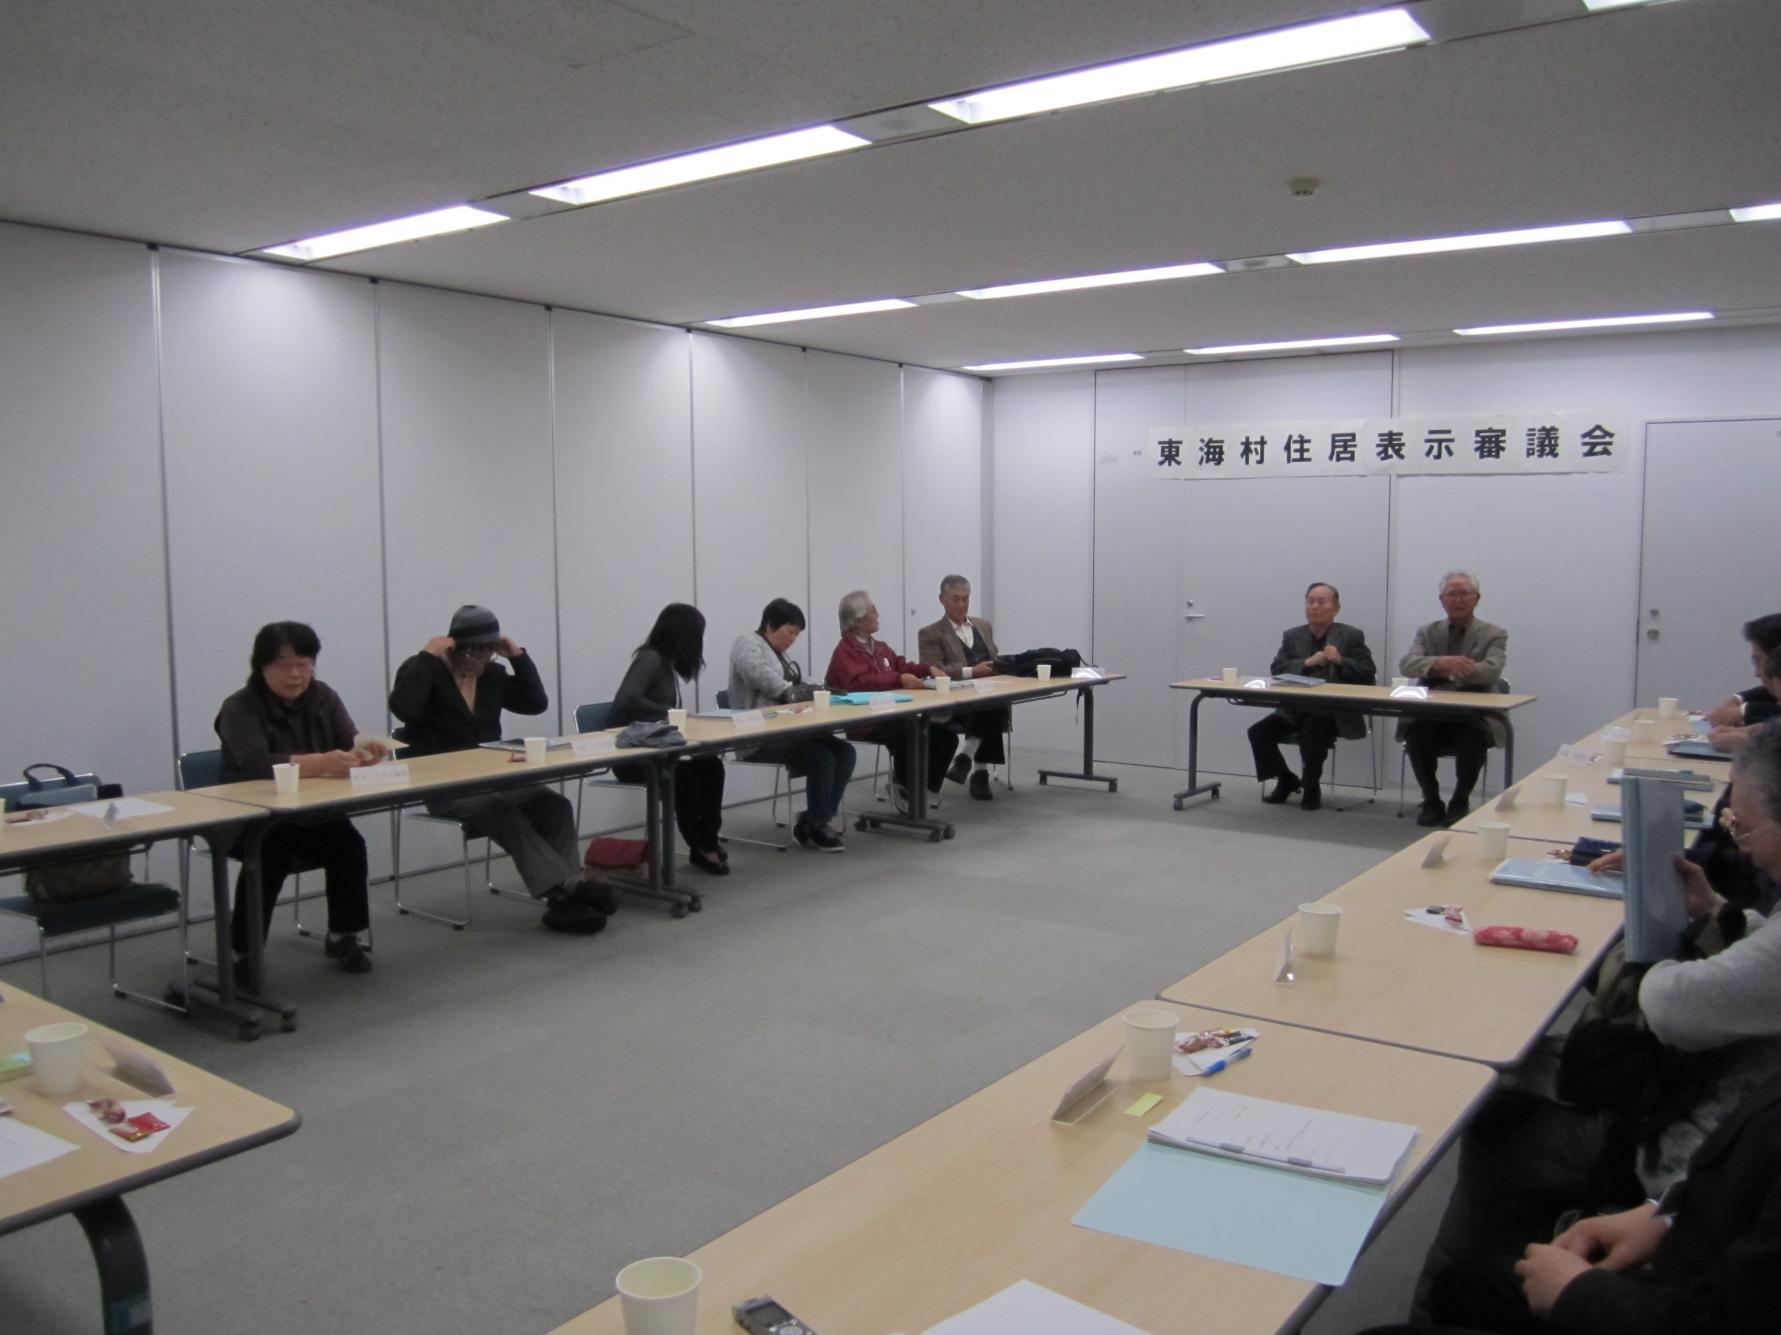 東海村住居表示審議会において、会議室にロの字型に並べられた机に向かって会議を進める参加者、12名ほどが写っている写真